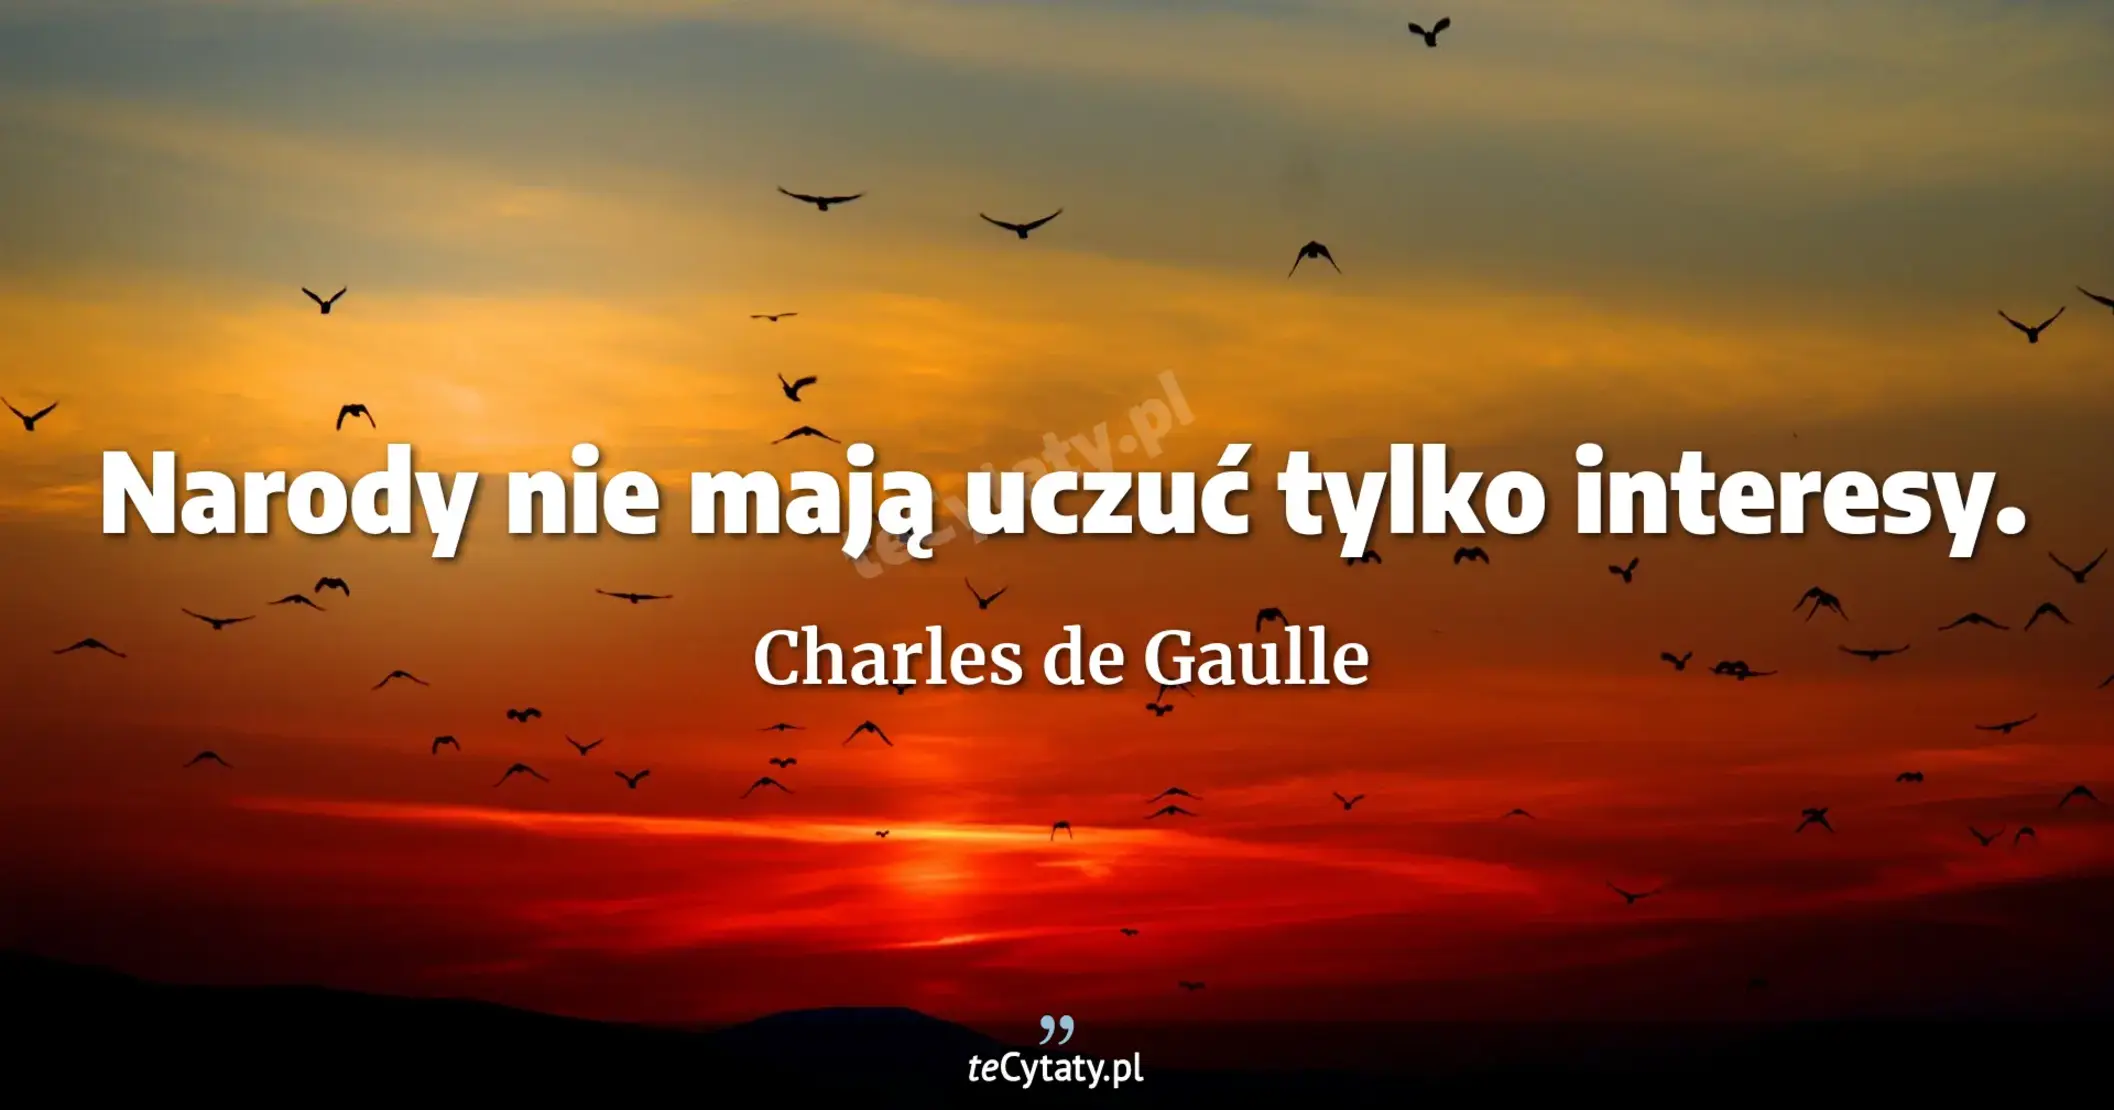 Narody nie mają uczuć tylko interesy. - Charles de Gaulle